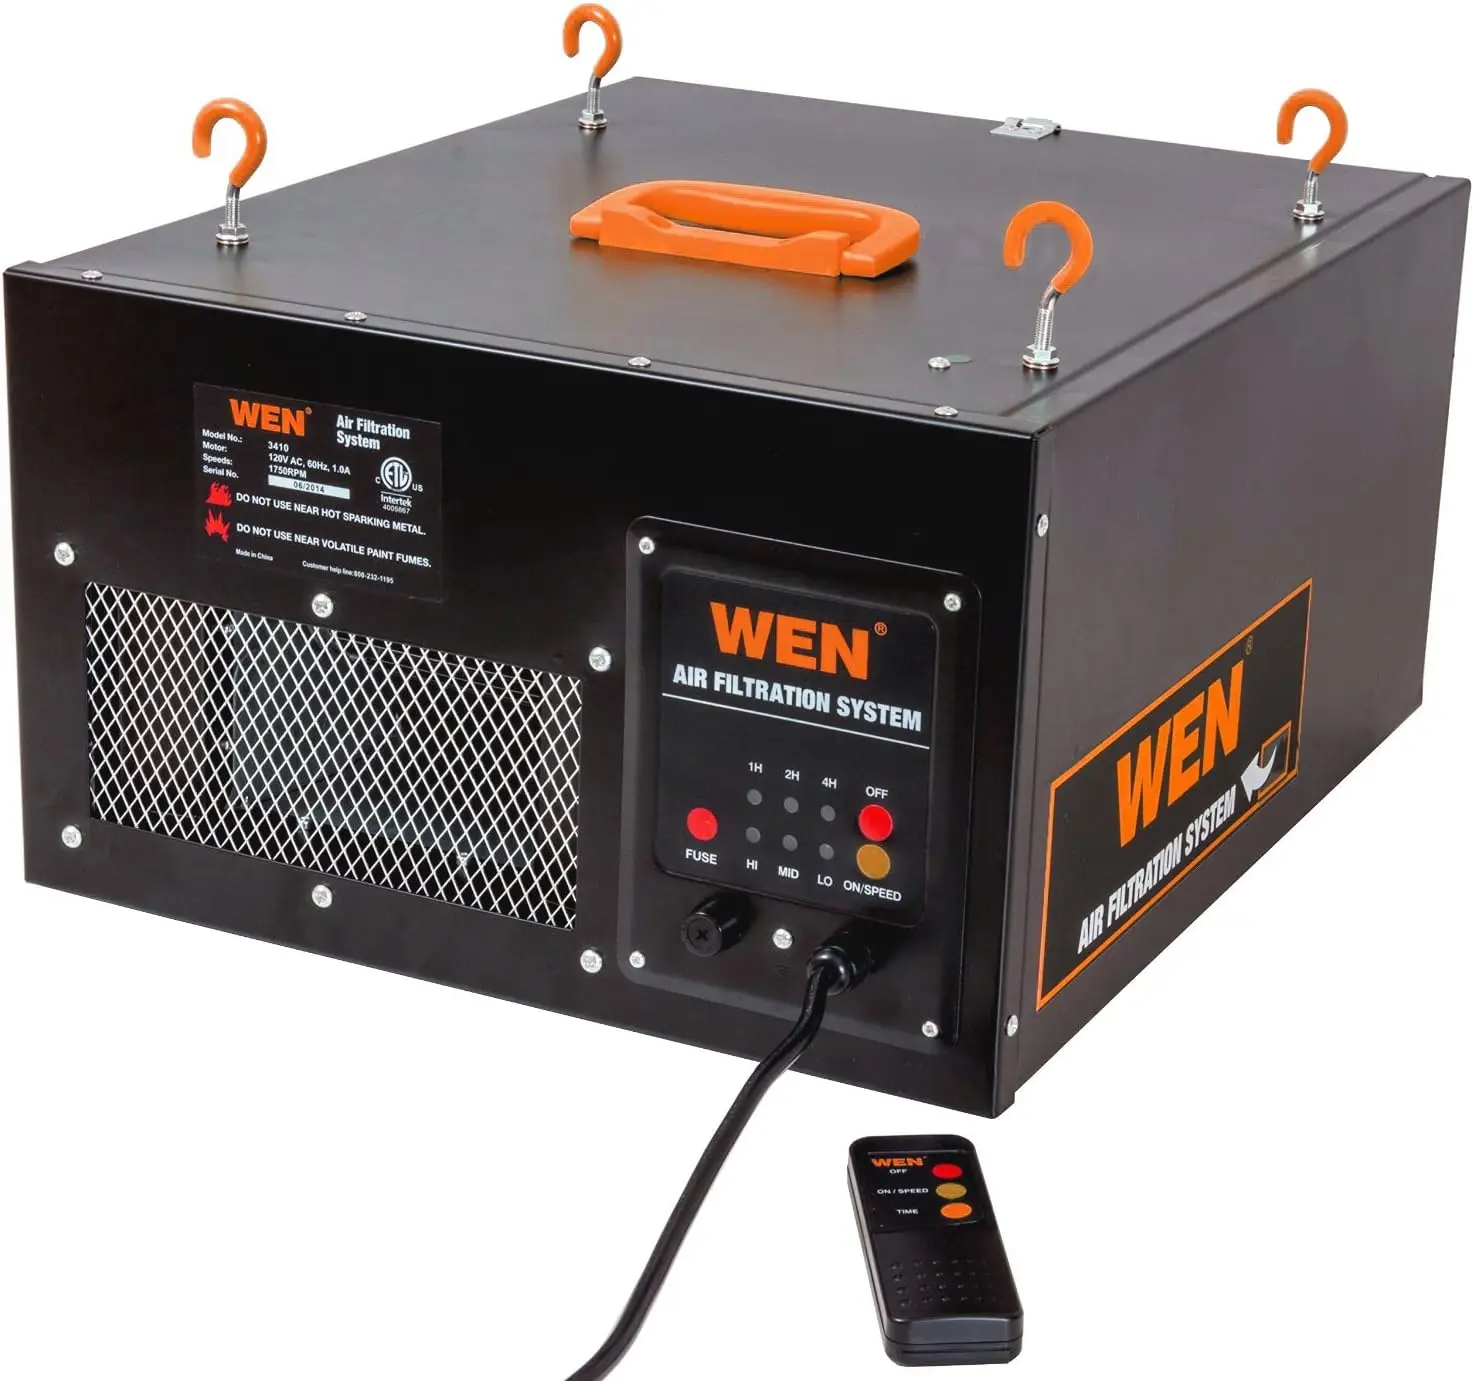 WEN-Sistema de Filtração de Ar com Controle Remoto, 3 Velocidades, Controle Remoto Básico W/ RF, 400 CFM, Filtros Negros, 3410, 300 CFM, 350 CFM